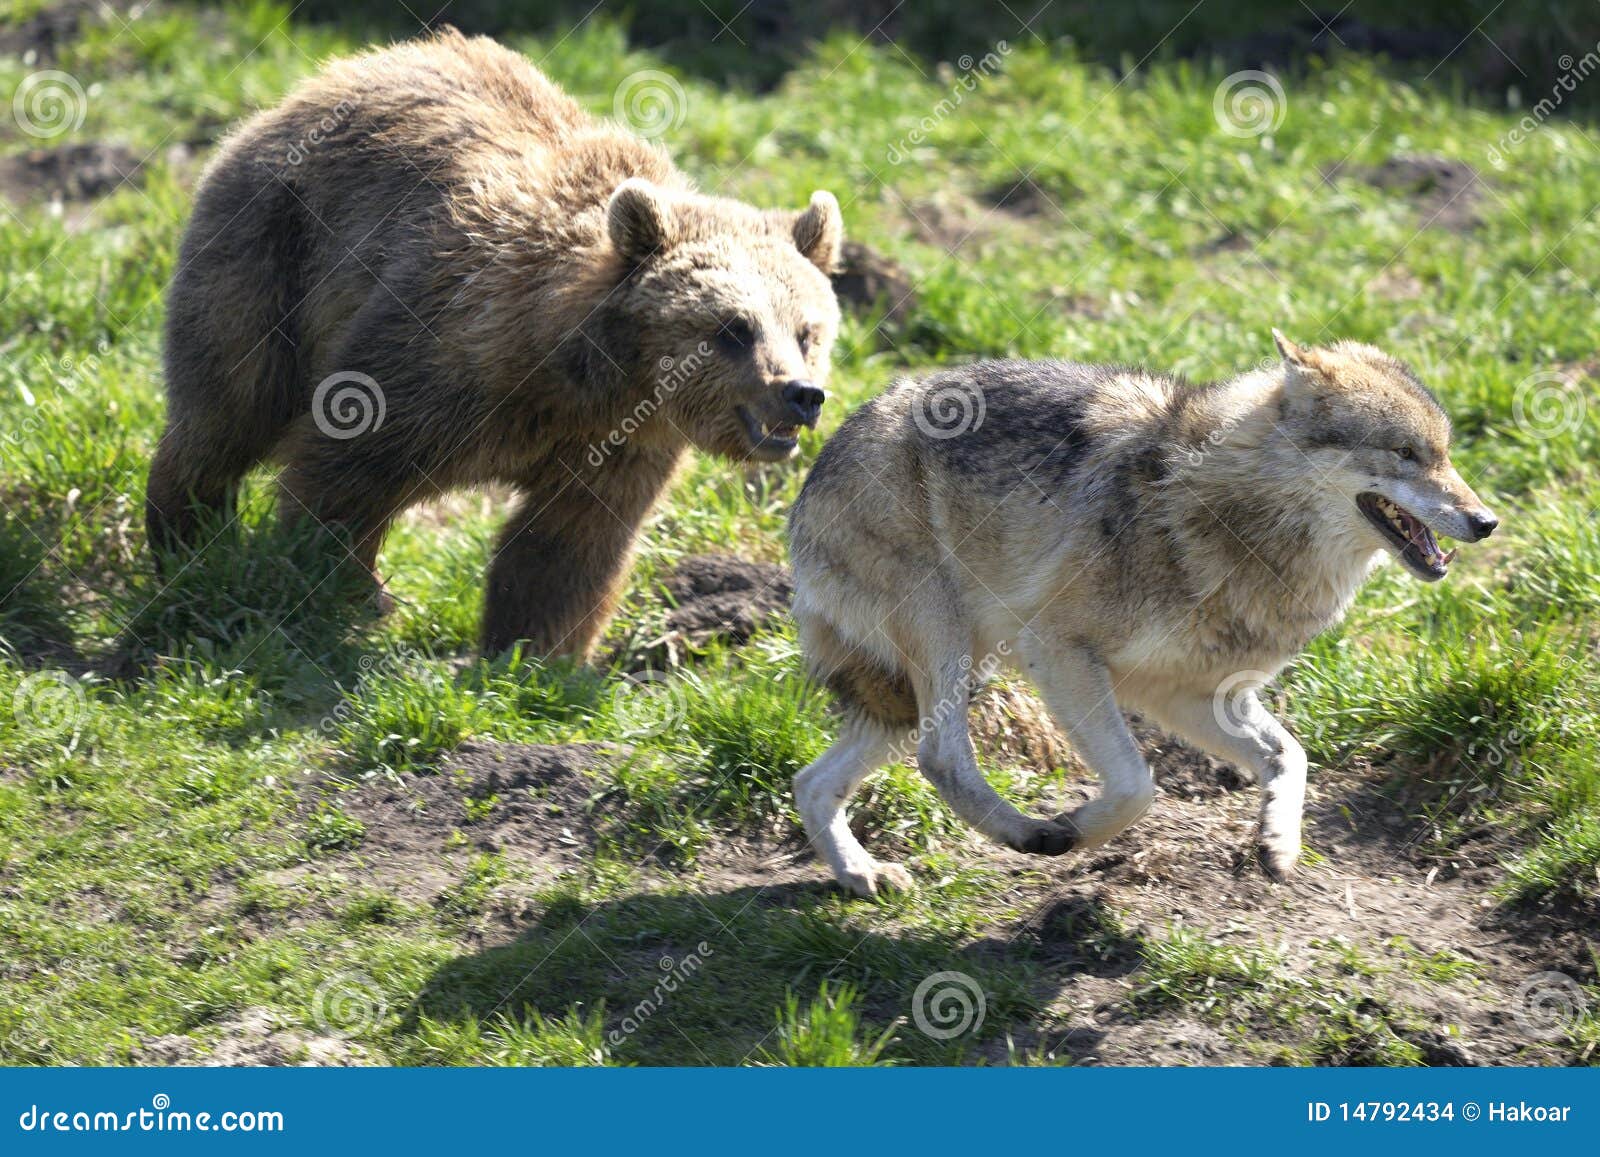 brown bear, ursus arctos